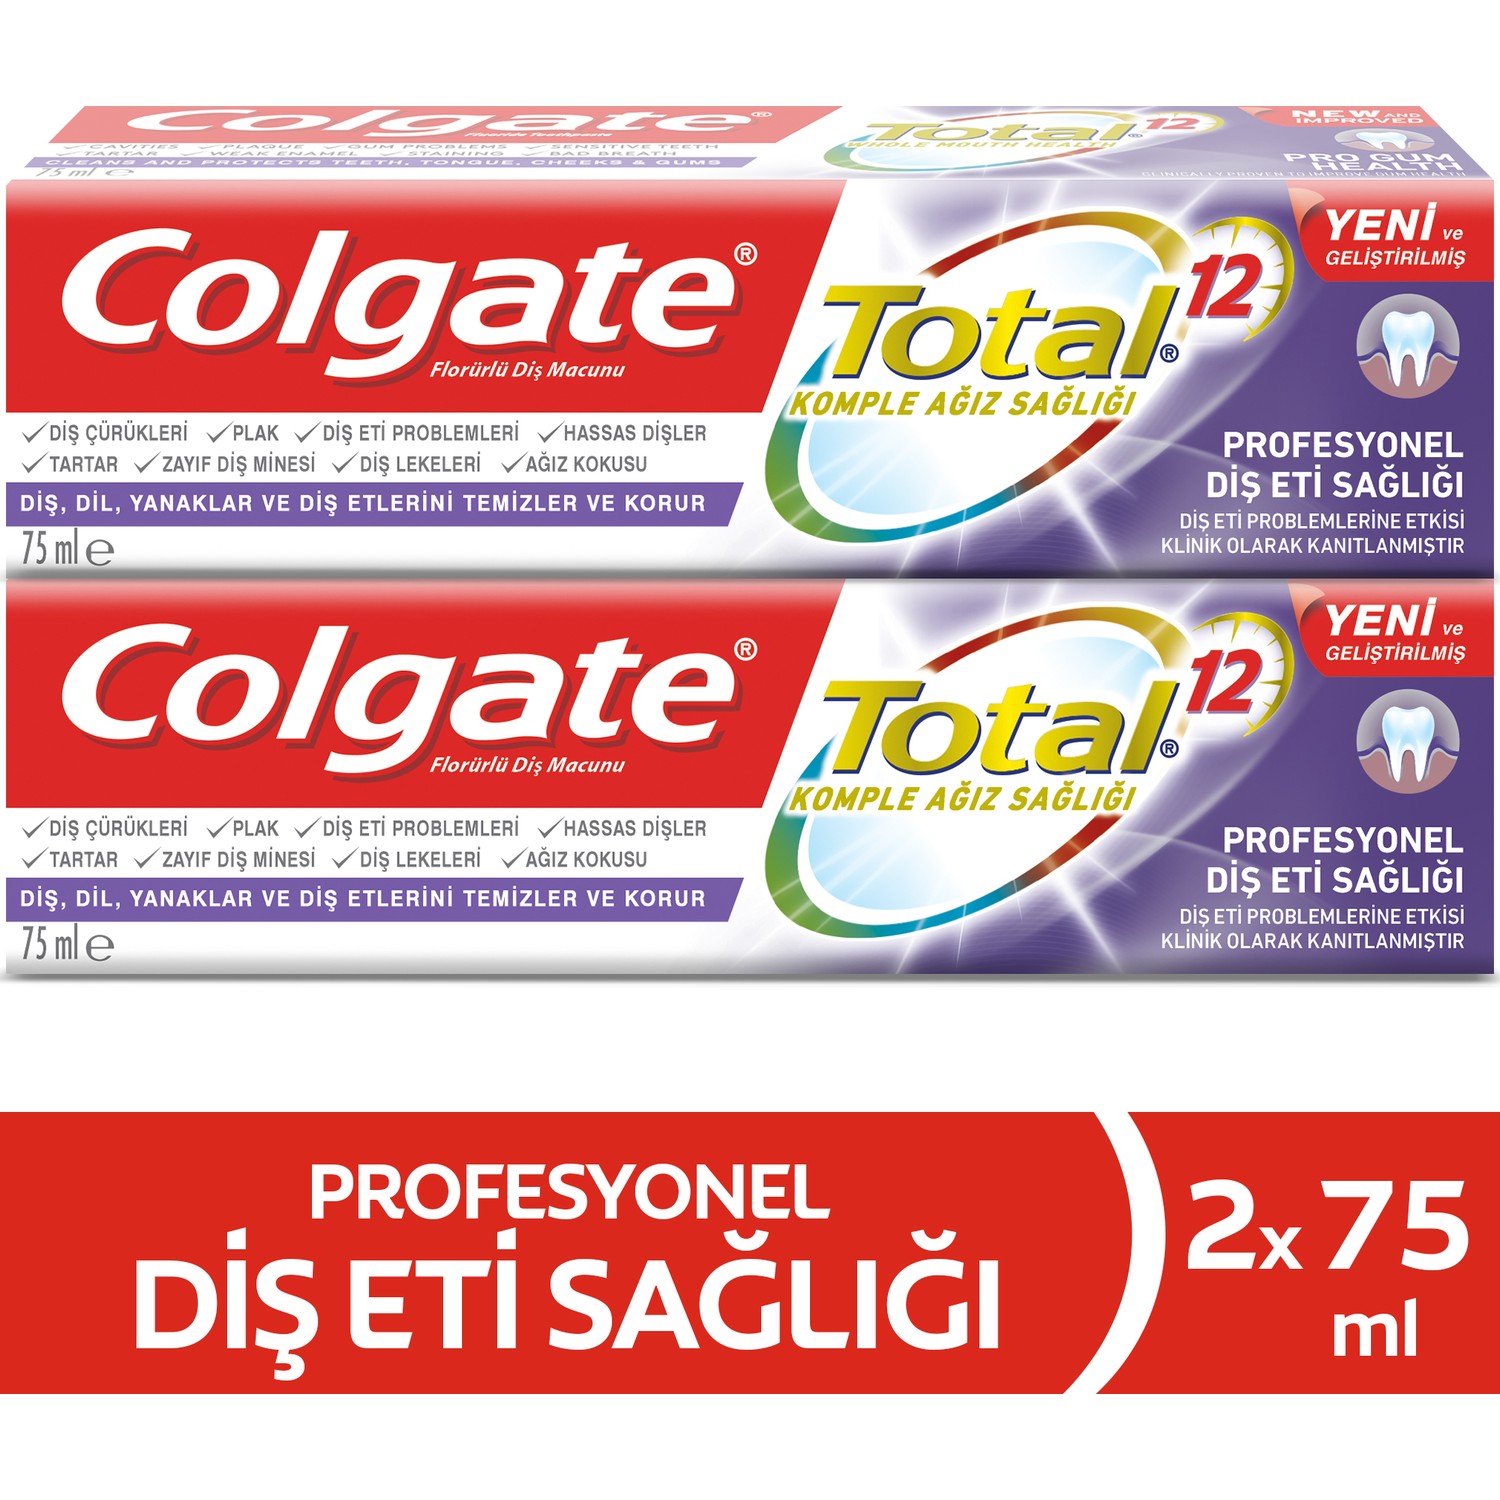 Colgate Total Profesyonel Diş Eti Sağlığı Diş Macunu 75 ml x Fiyatı